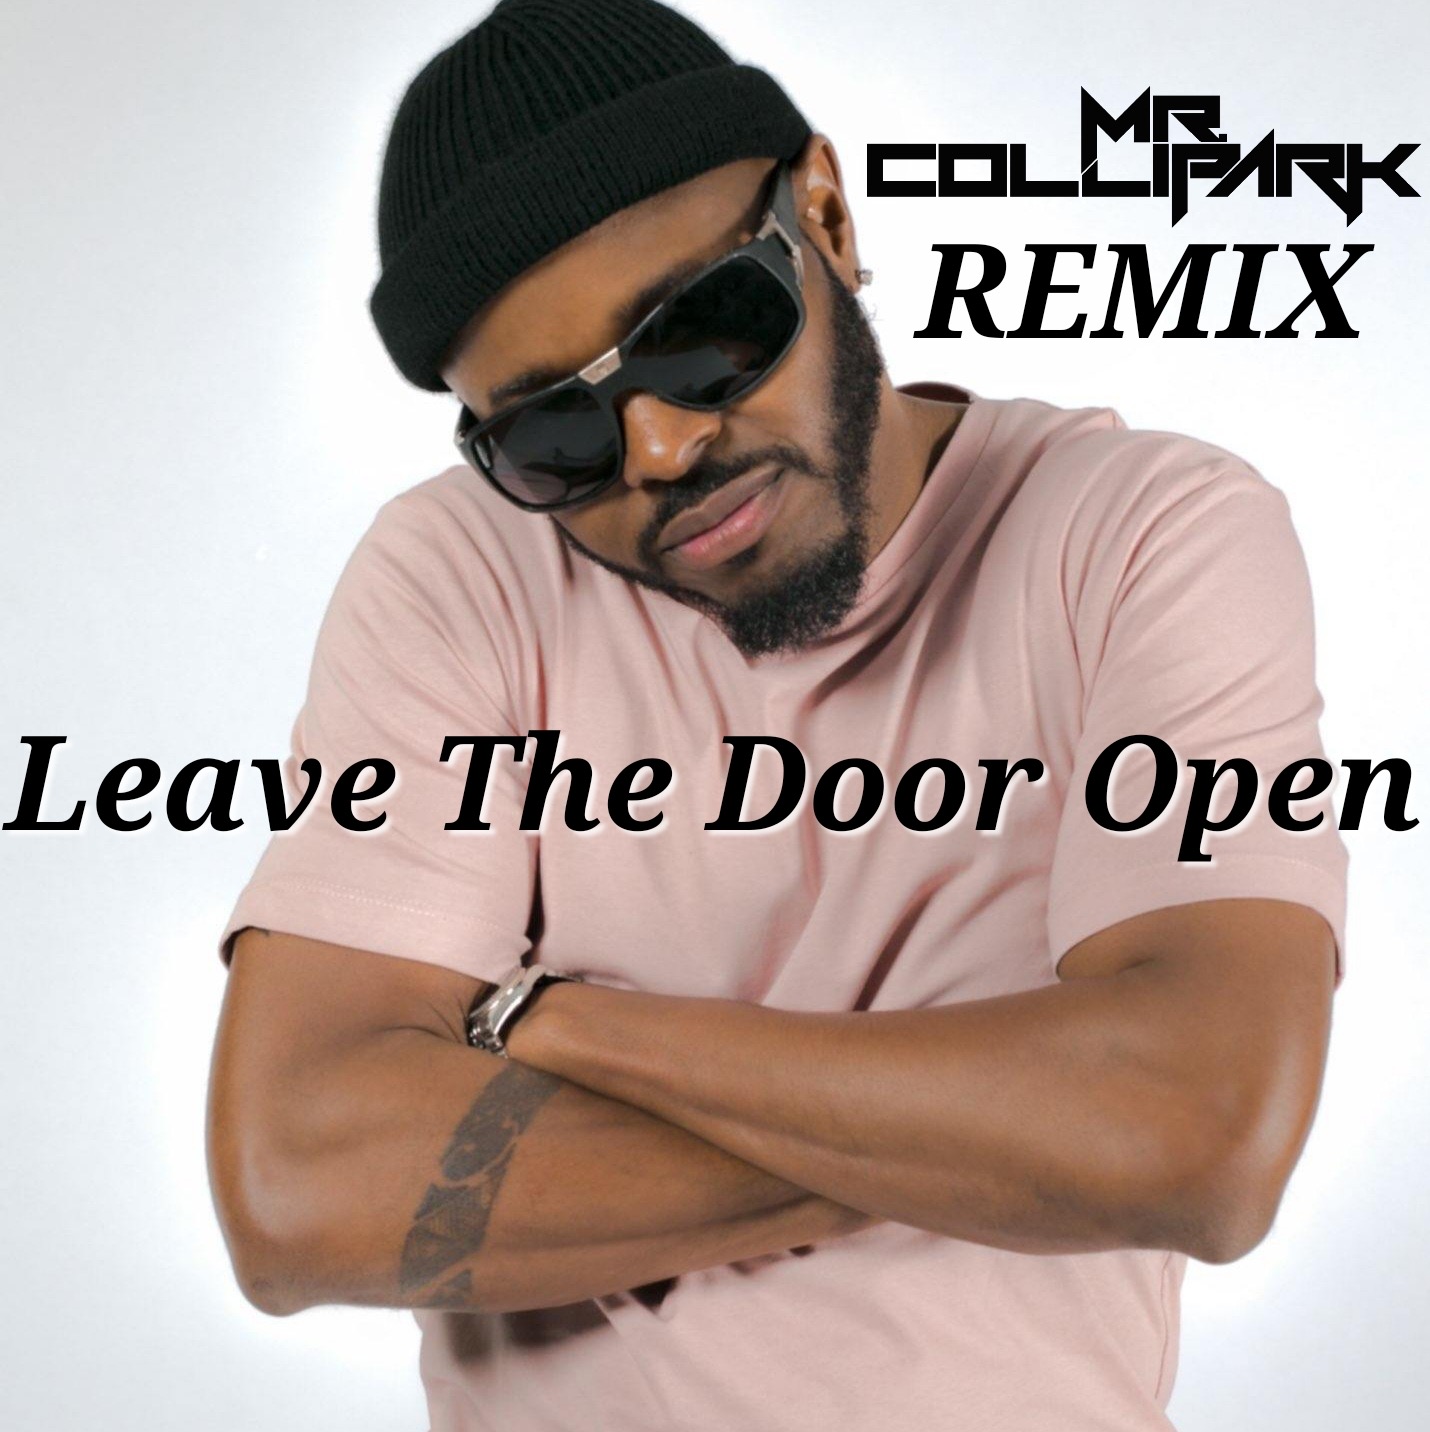 Bruno Mars, Anderson .Paak & Silk Sonic - Leave The Door Open (MR. COLLIPARK Remix)